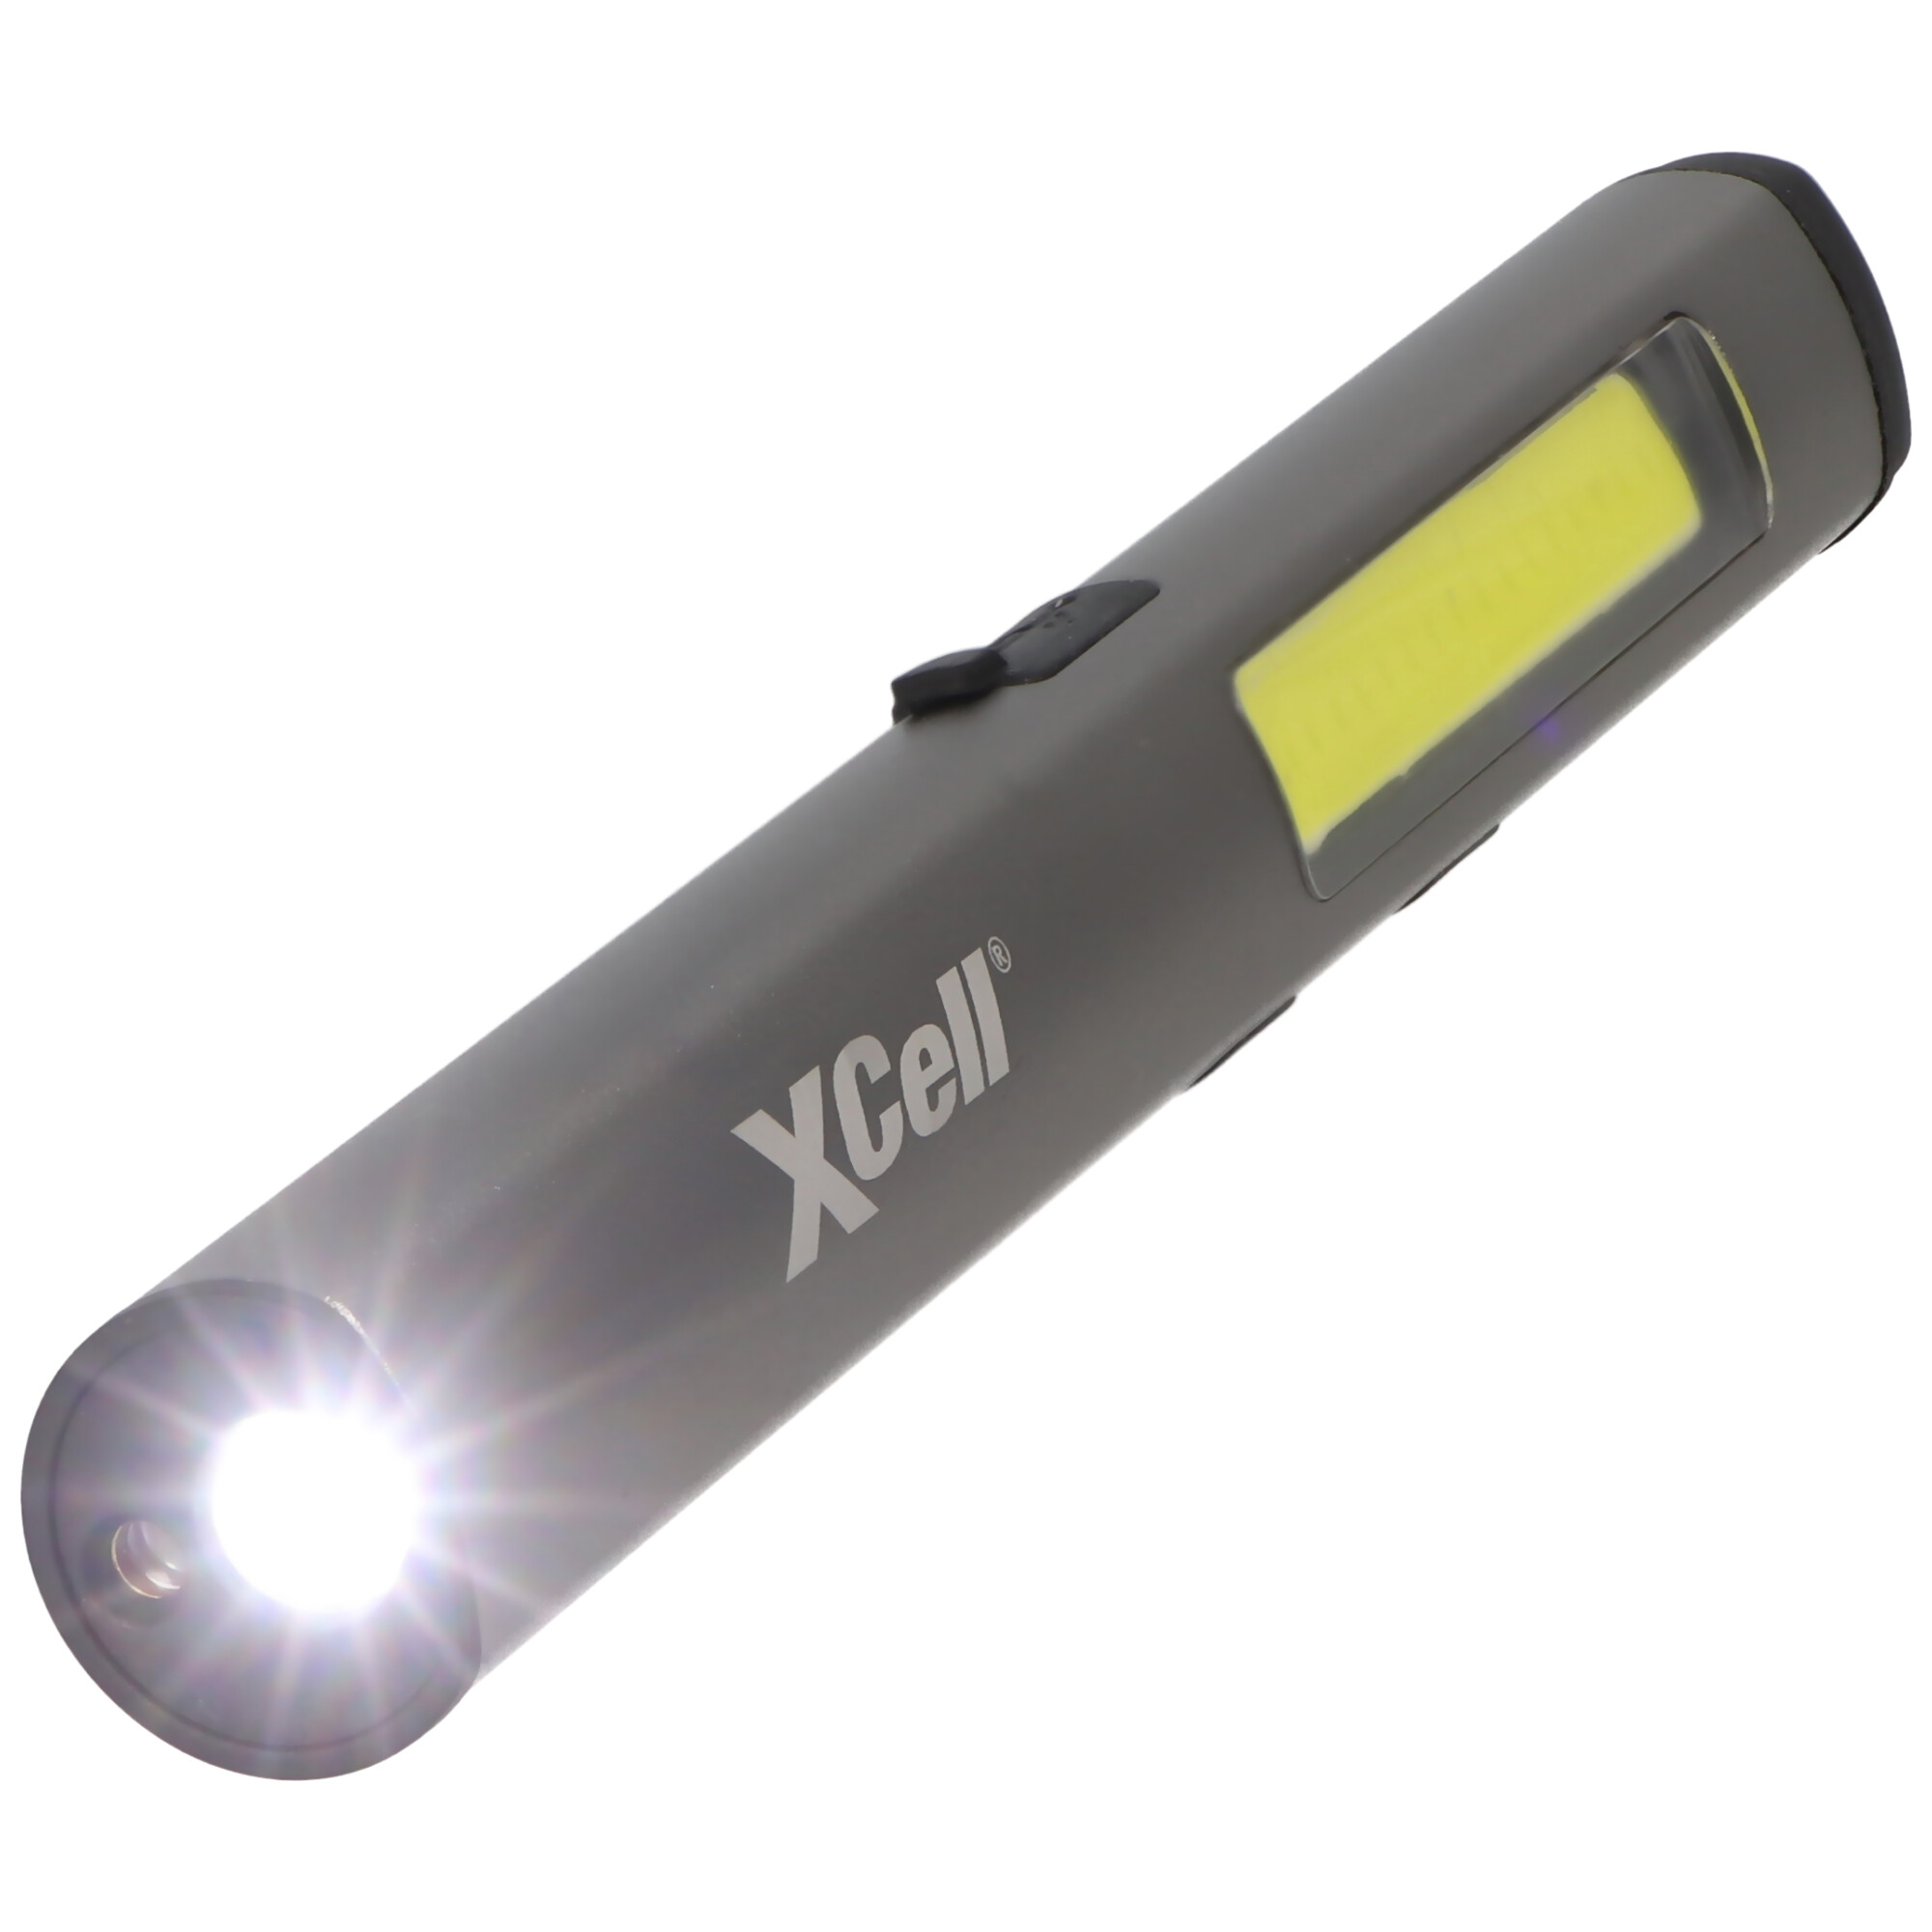 LED Taschenlampe mit zusätzlichem UV- und Laserlicht sowie seitlicher LED-Lichtleiste, magnetischer Clip, integrierter Akku sowie USB-C Ladefunktion